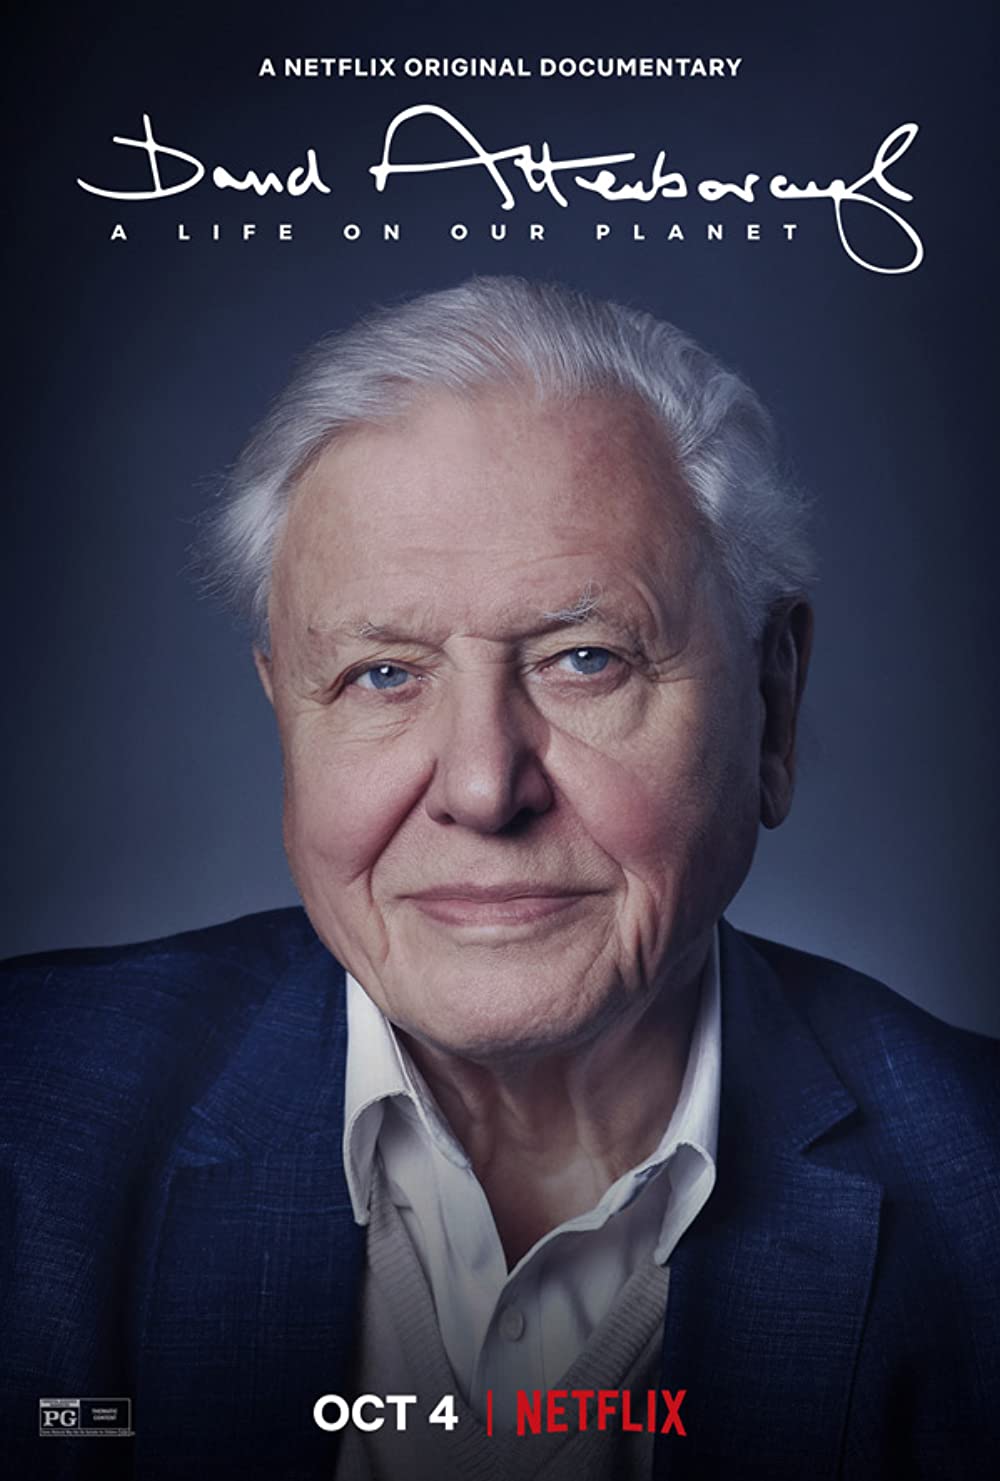 Filmbeschreibung zu David Attenborough: A Life on Our Planet